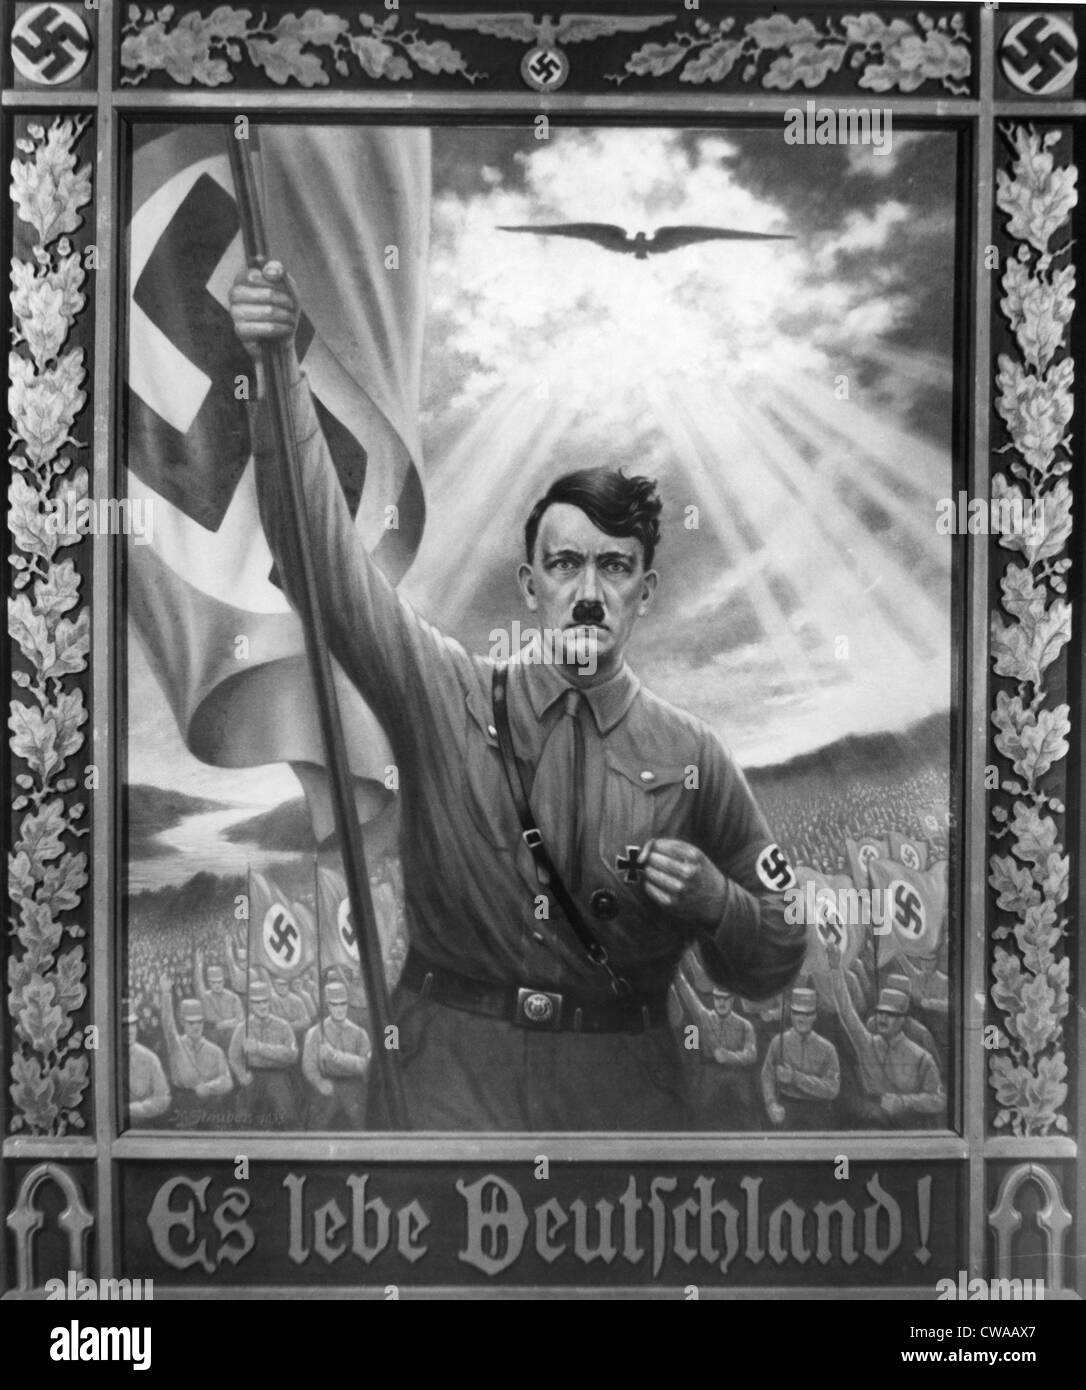 ADOLF HITLER, 1933 peinture intitulée, "Es lebe Deutschland", commémorant l'année Hitler est venu au pouvoir. Everett/CSU Archives. Banque D'Images